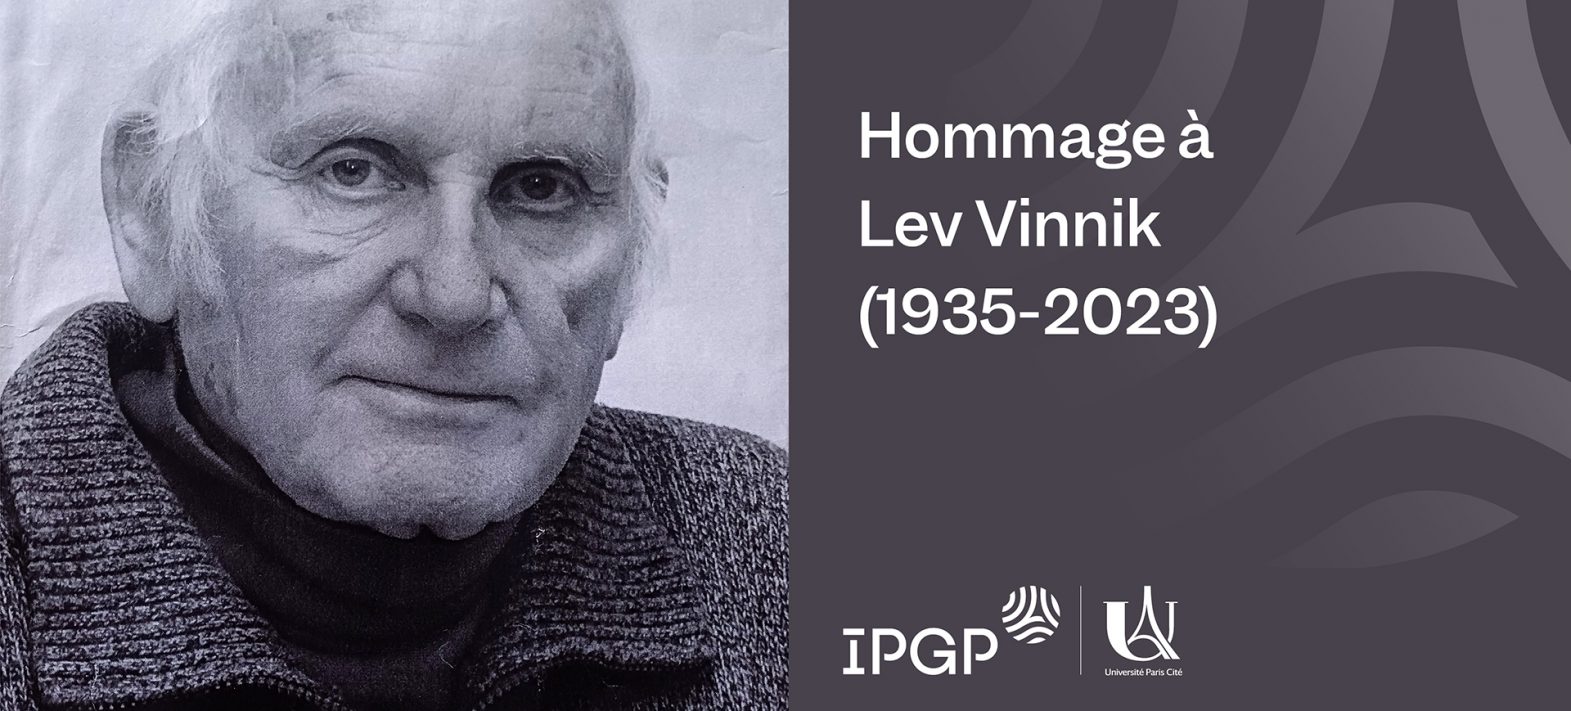 Hommage à Lev Vinnik